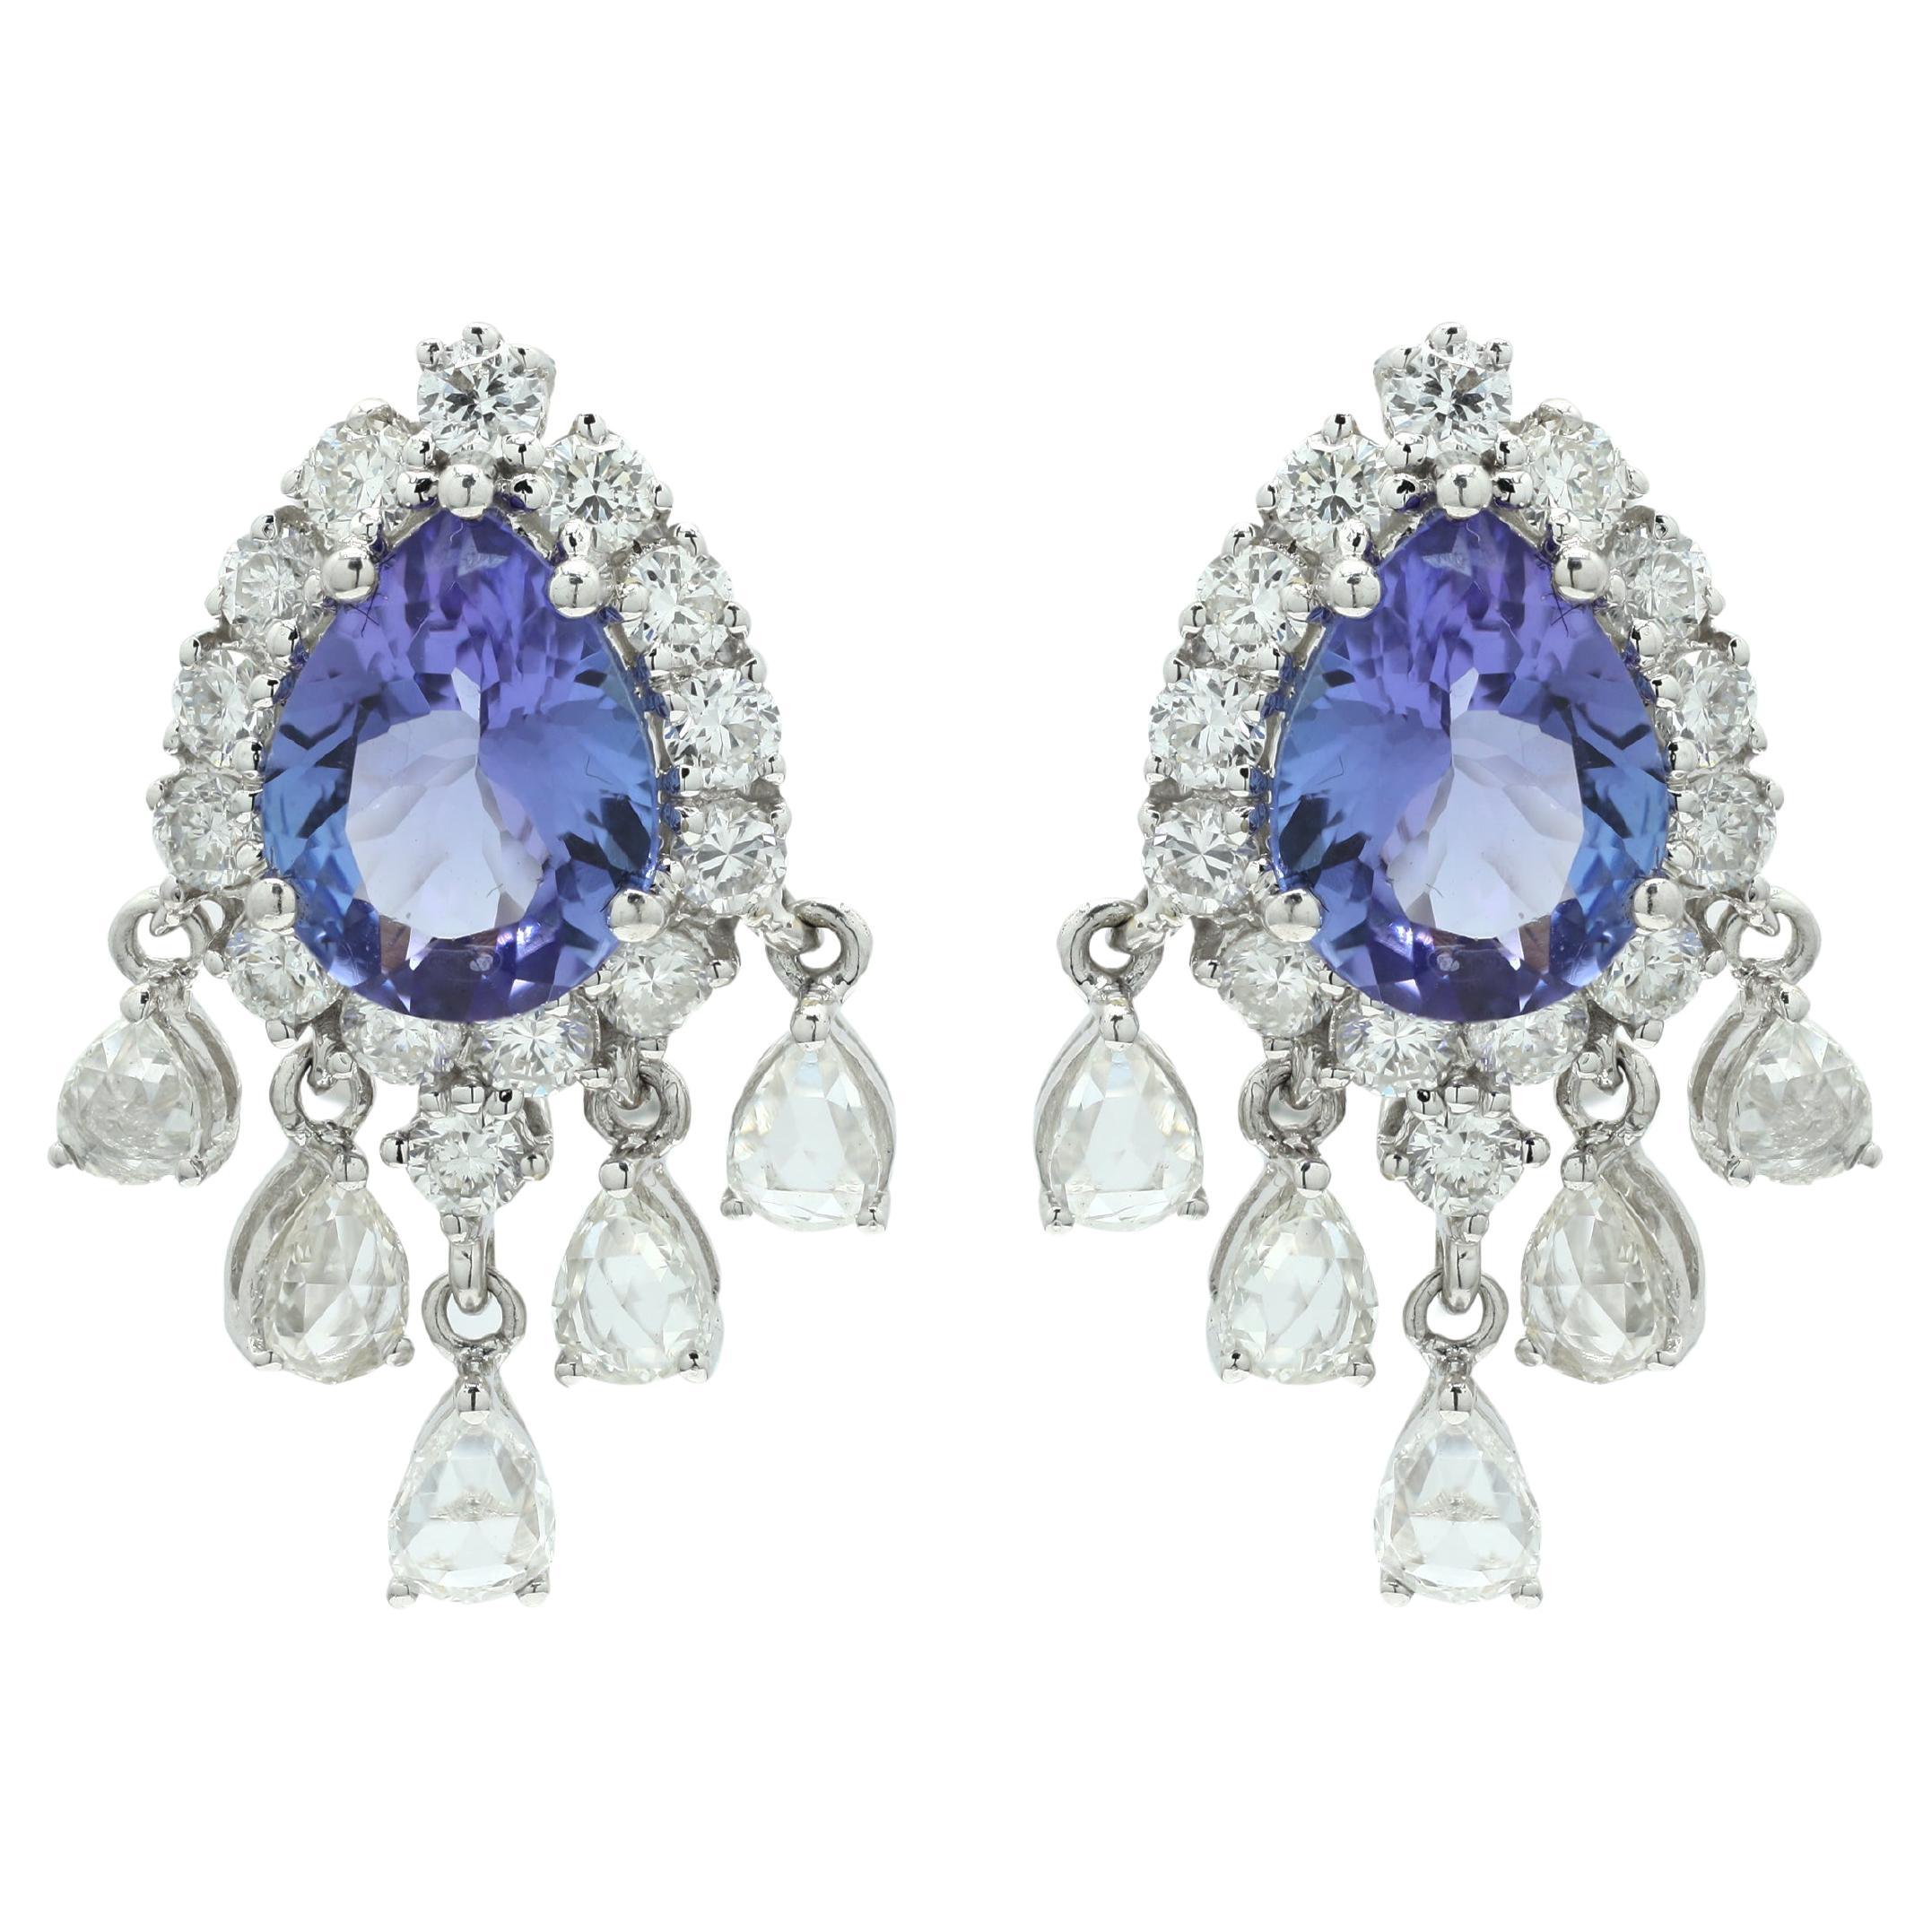 Statement-Hochzeits-Ohrringe aus 14 Karat Weißgold mit lebhaftem blauem Saphir